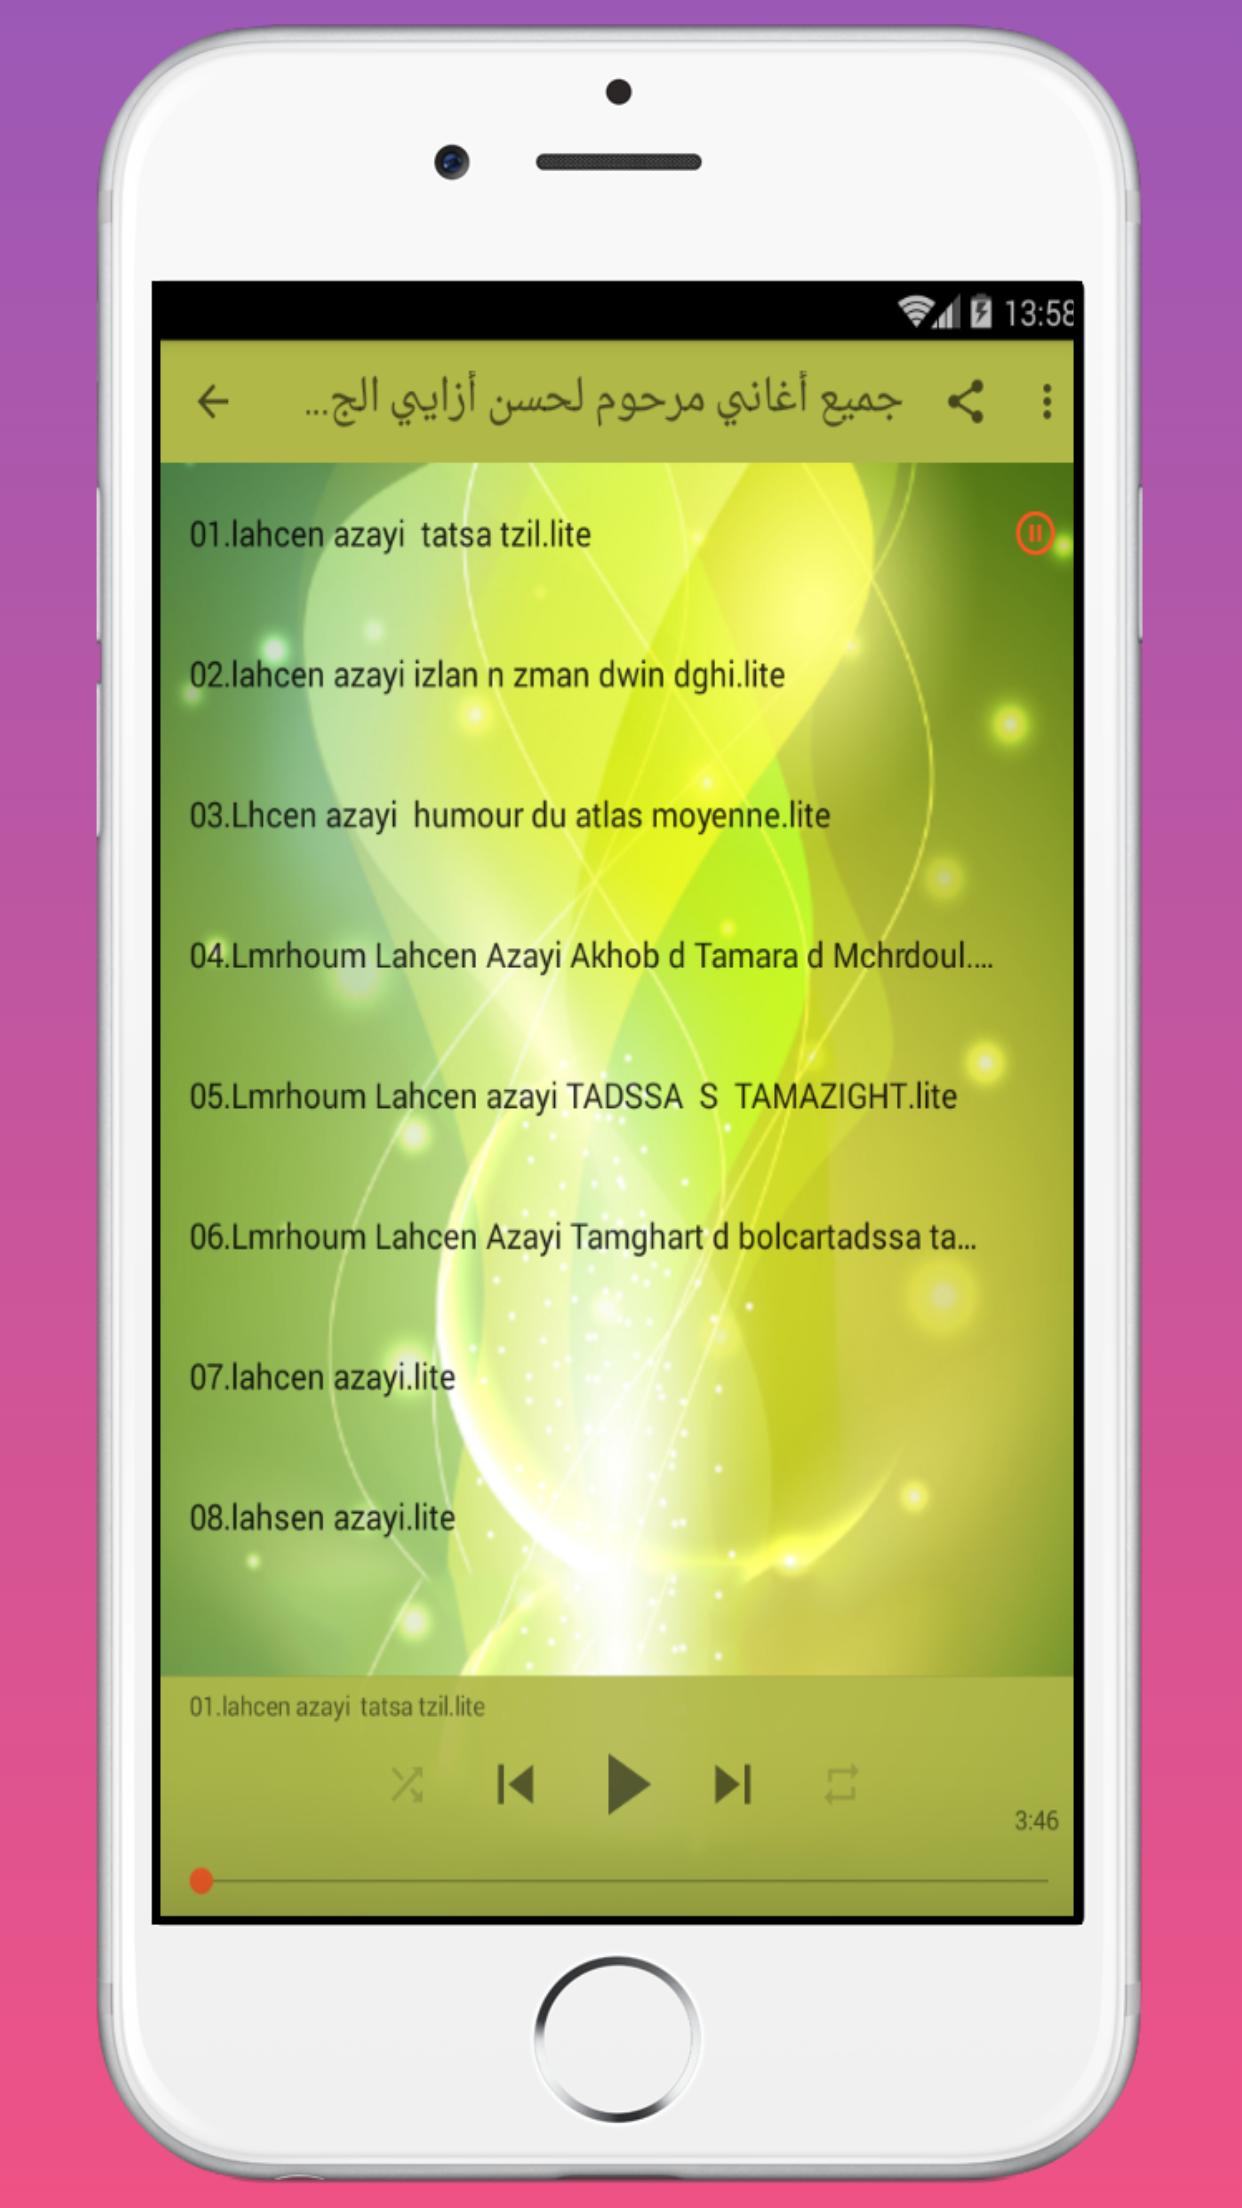 جميع أغاني مرحوم لحسن أزايي الجديدة lahcen azayi APK untuk Unduhan Android